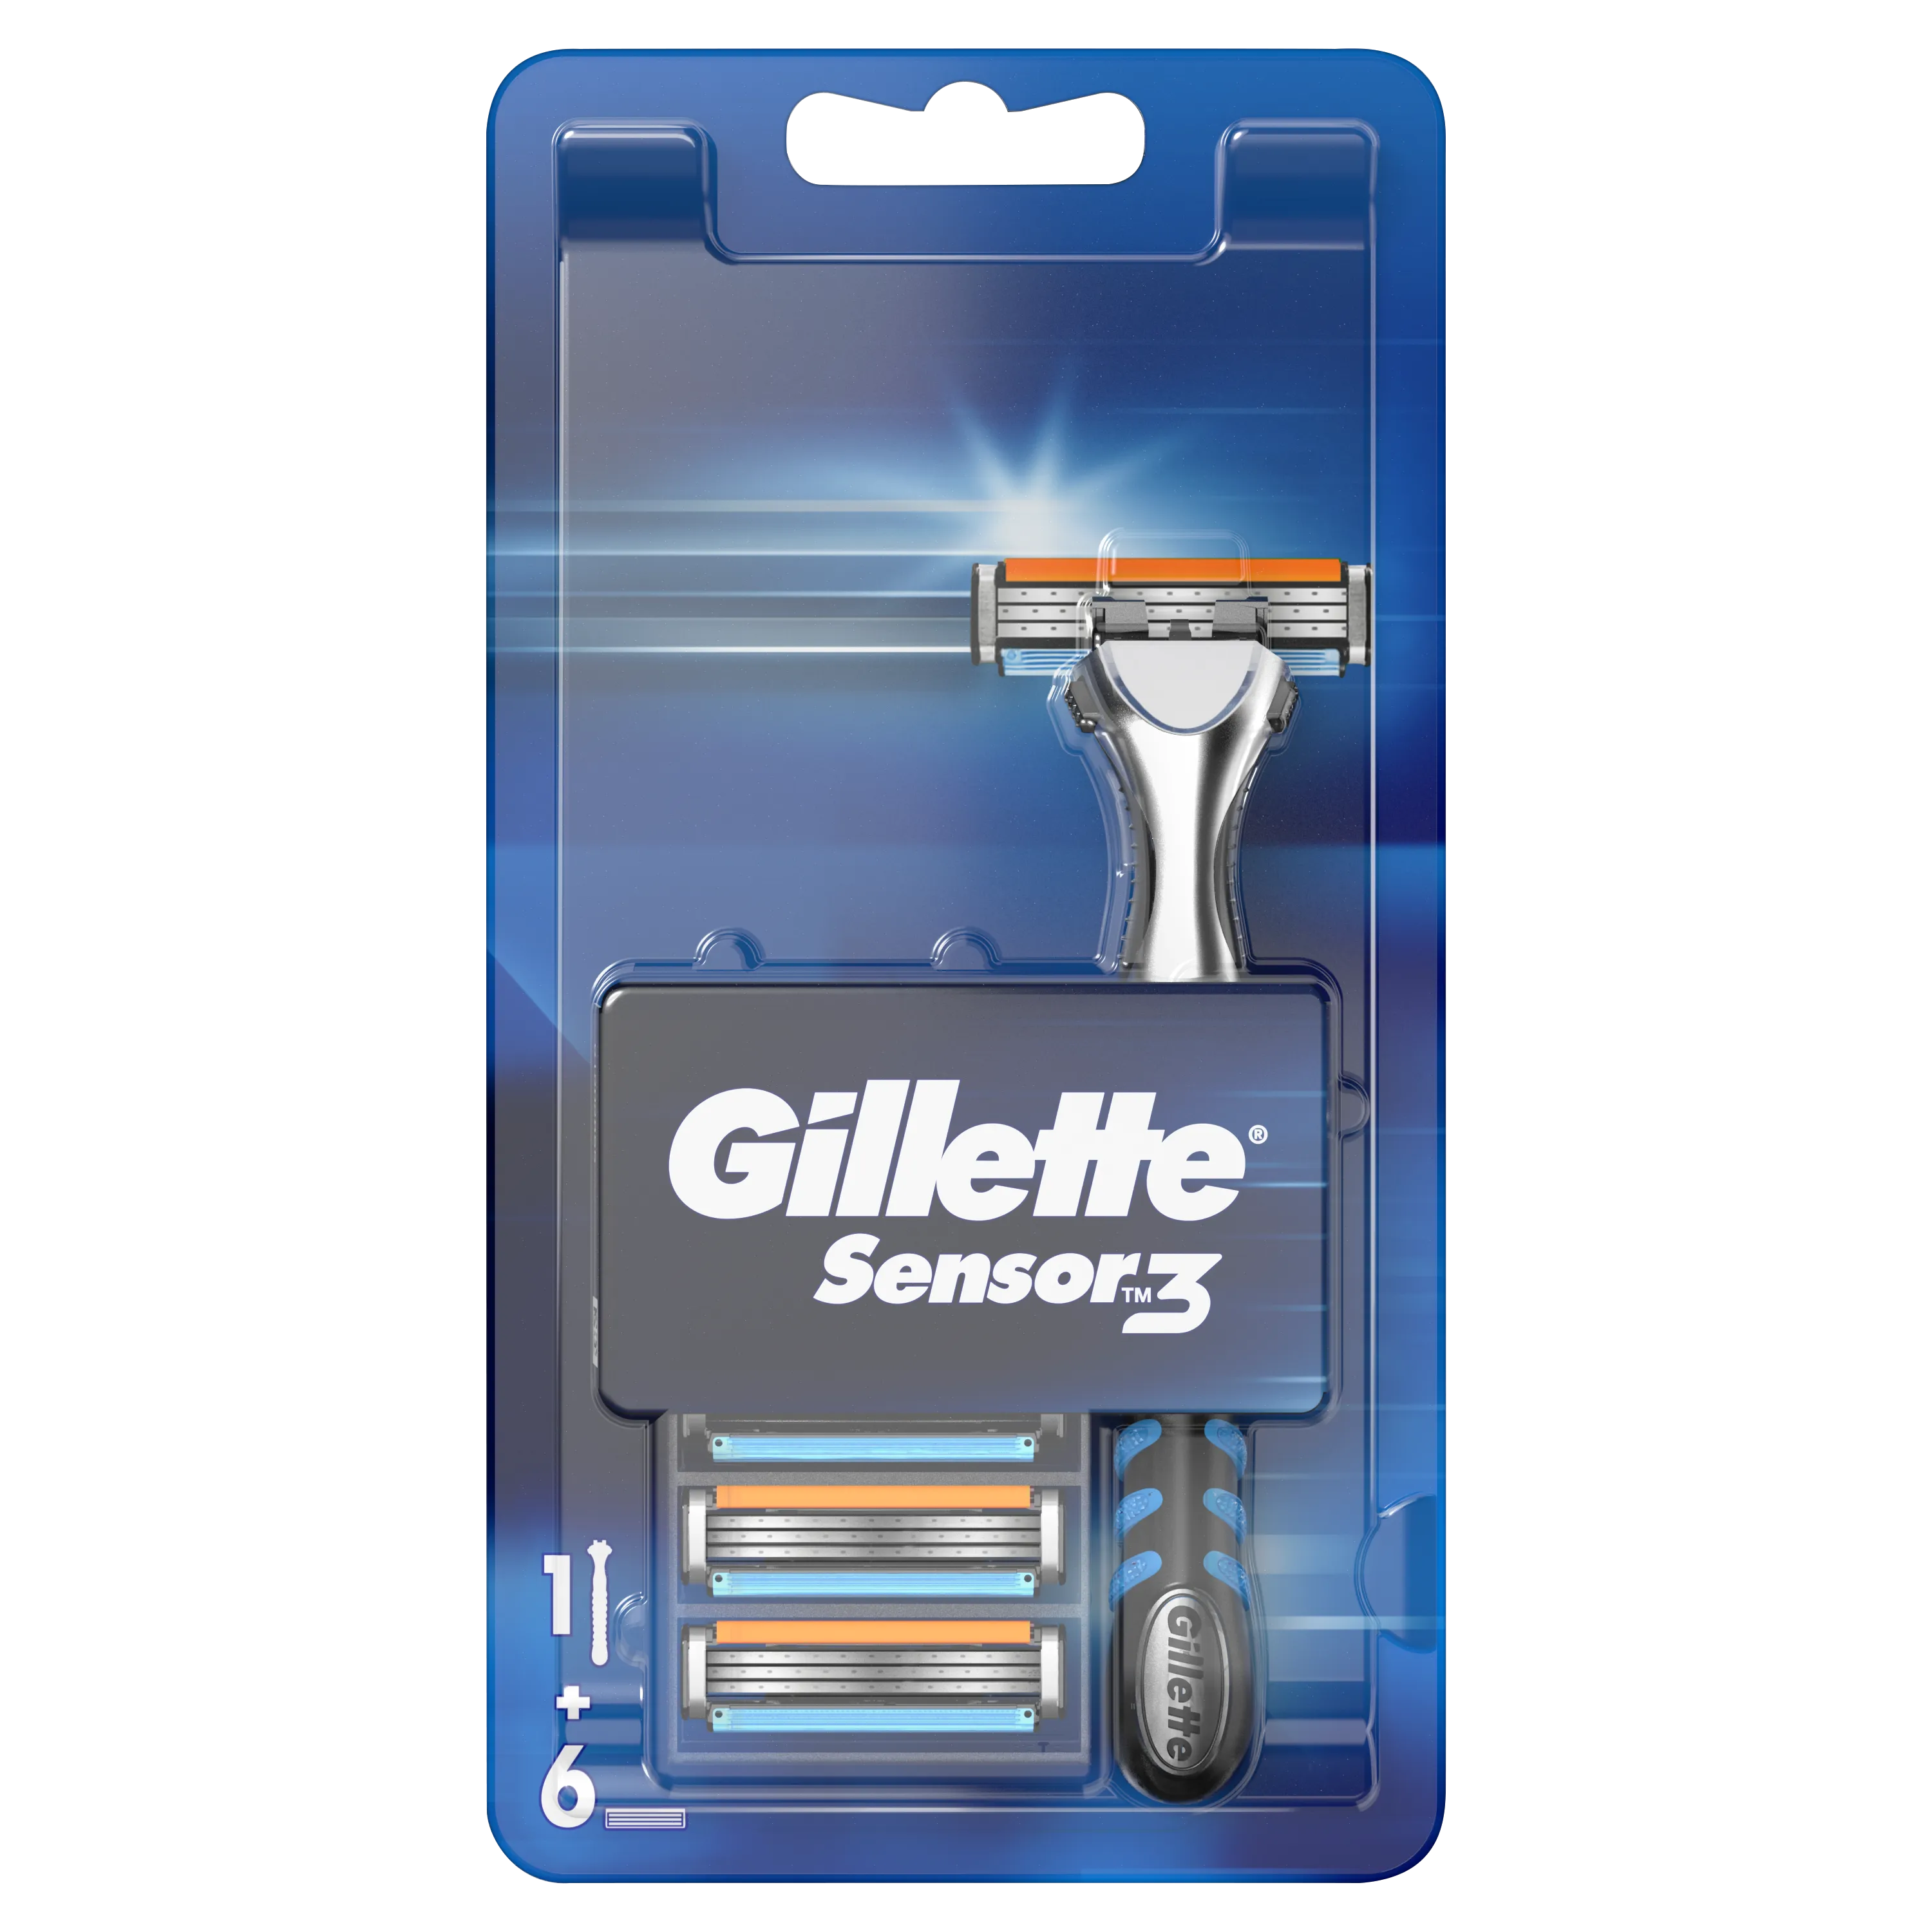 Gillette Sensor3 Starter maszynka do golenia + wkłady, 1 szt. + 6 ostrzy